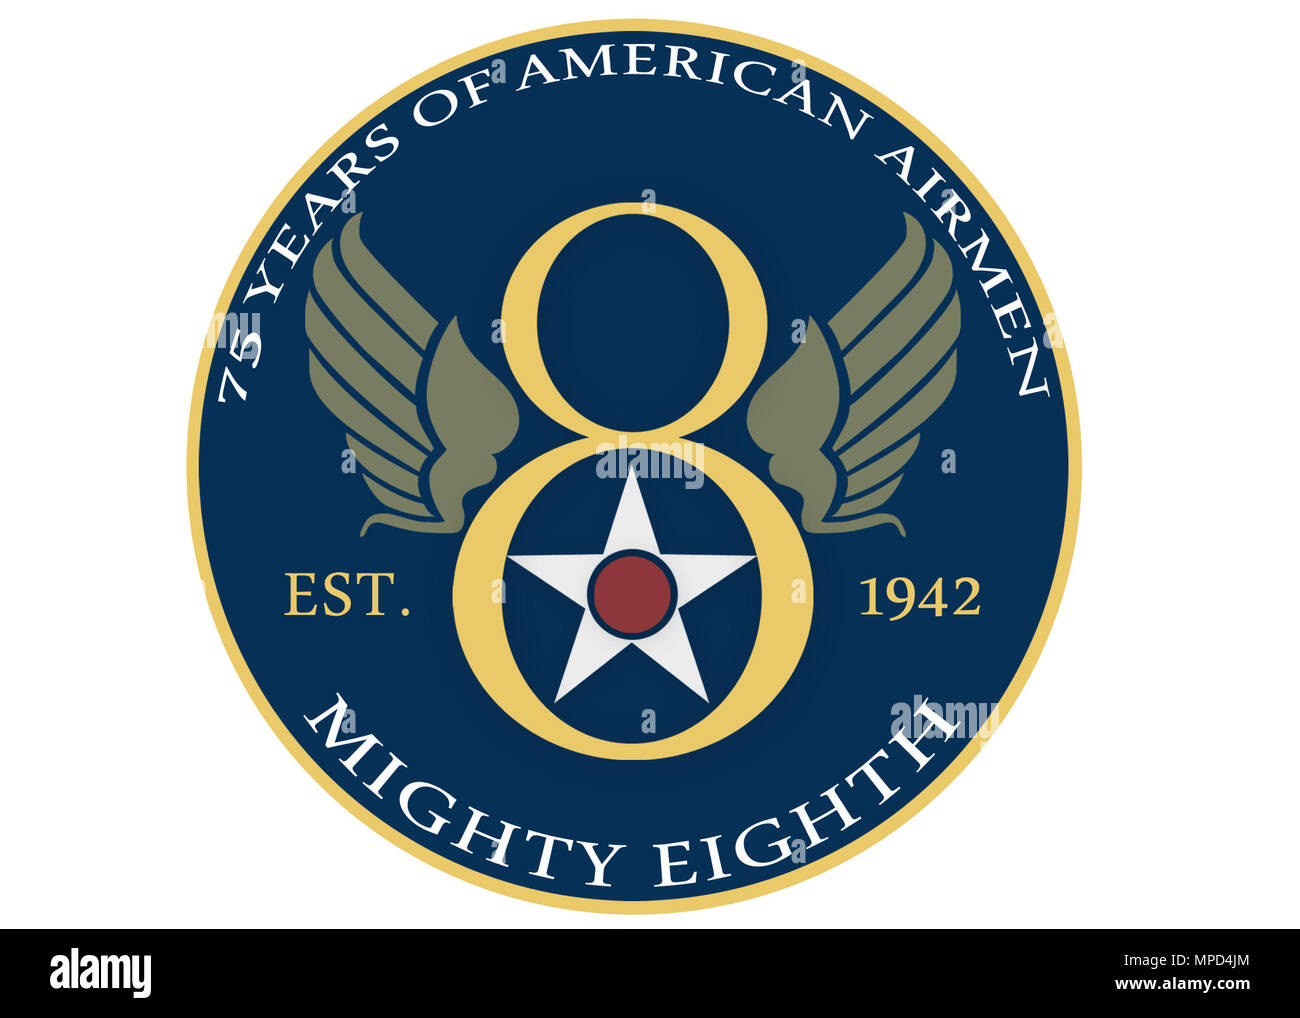 Coin et patch design créé pour le huitième du 75e anniversaire de l'Armée de l'air. (U.S. Air Force/graphique d'un membre de la 1re classe J.T. Armstrong) Banque D'Images